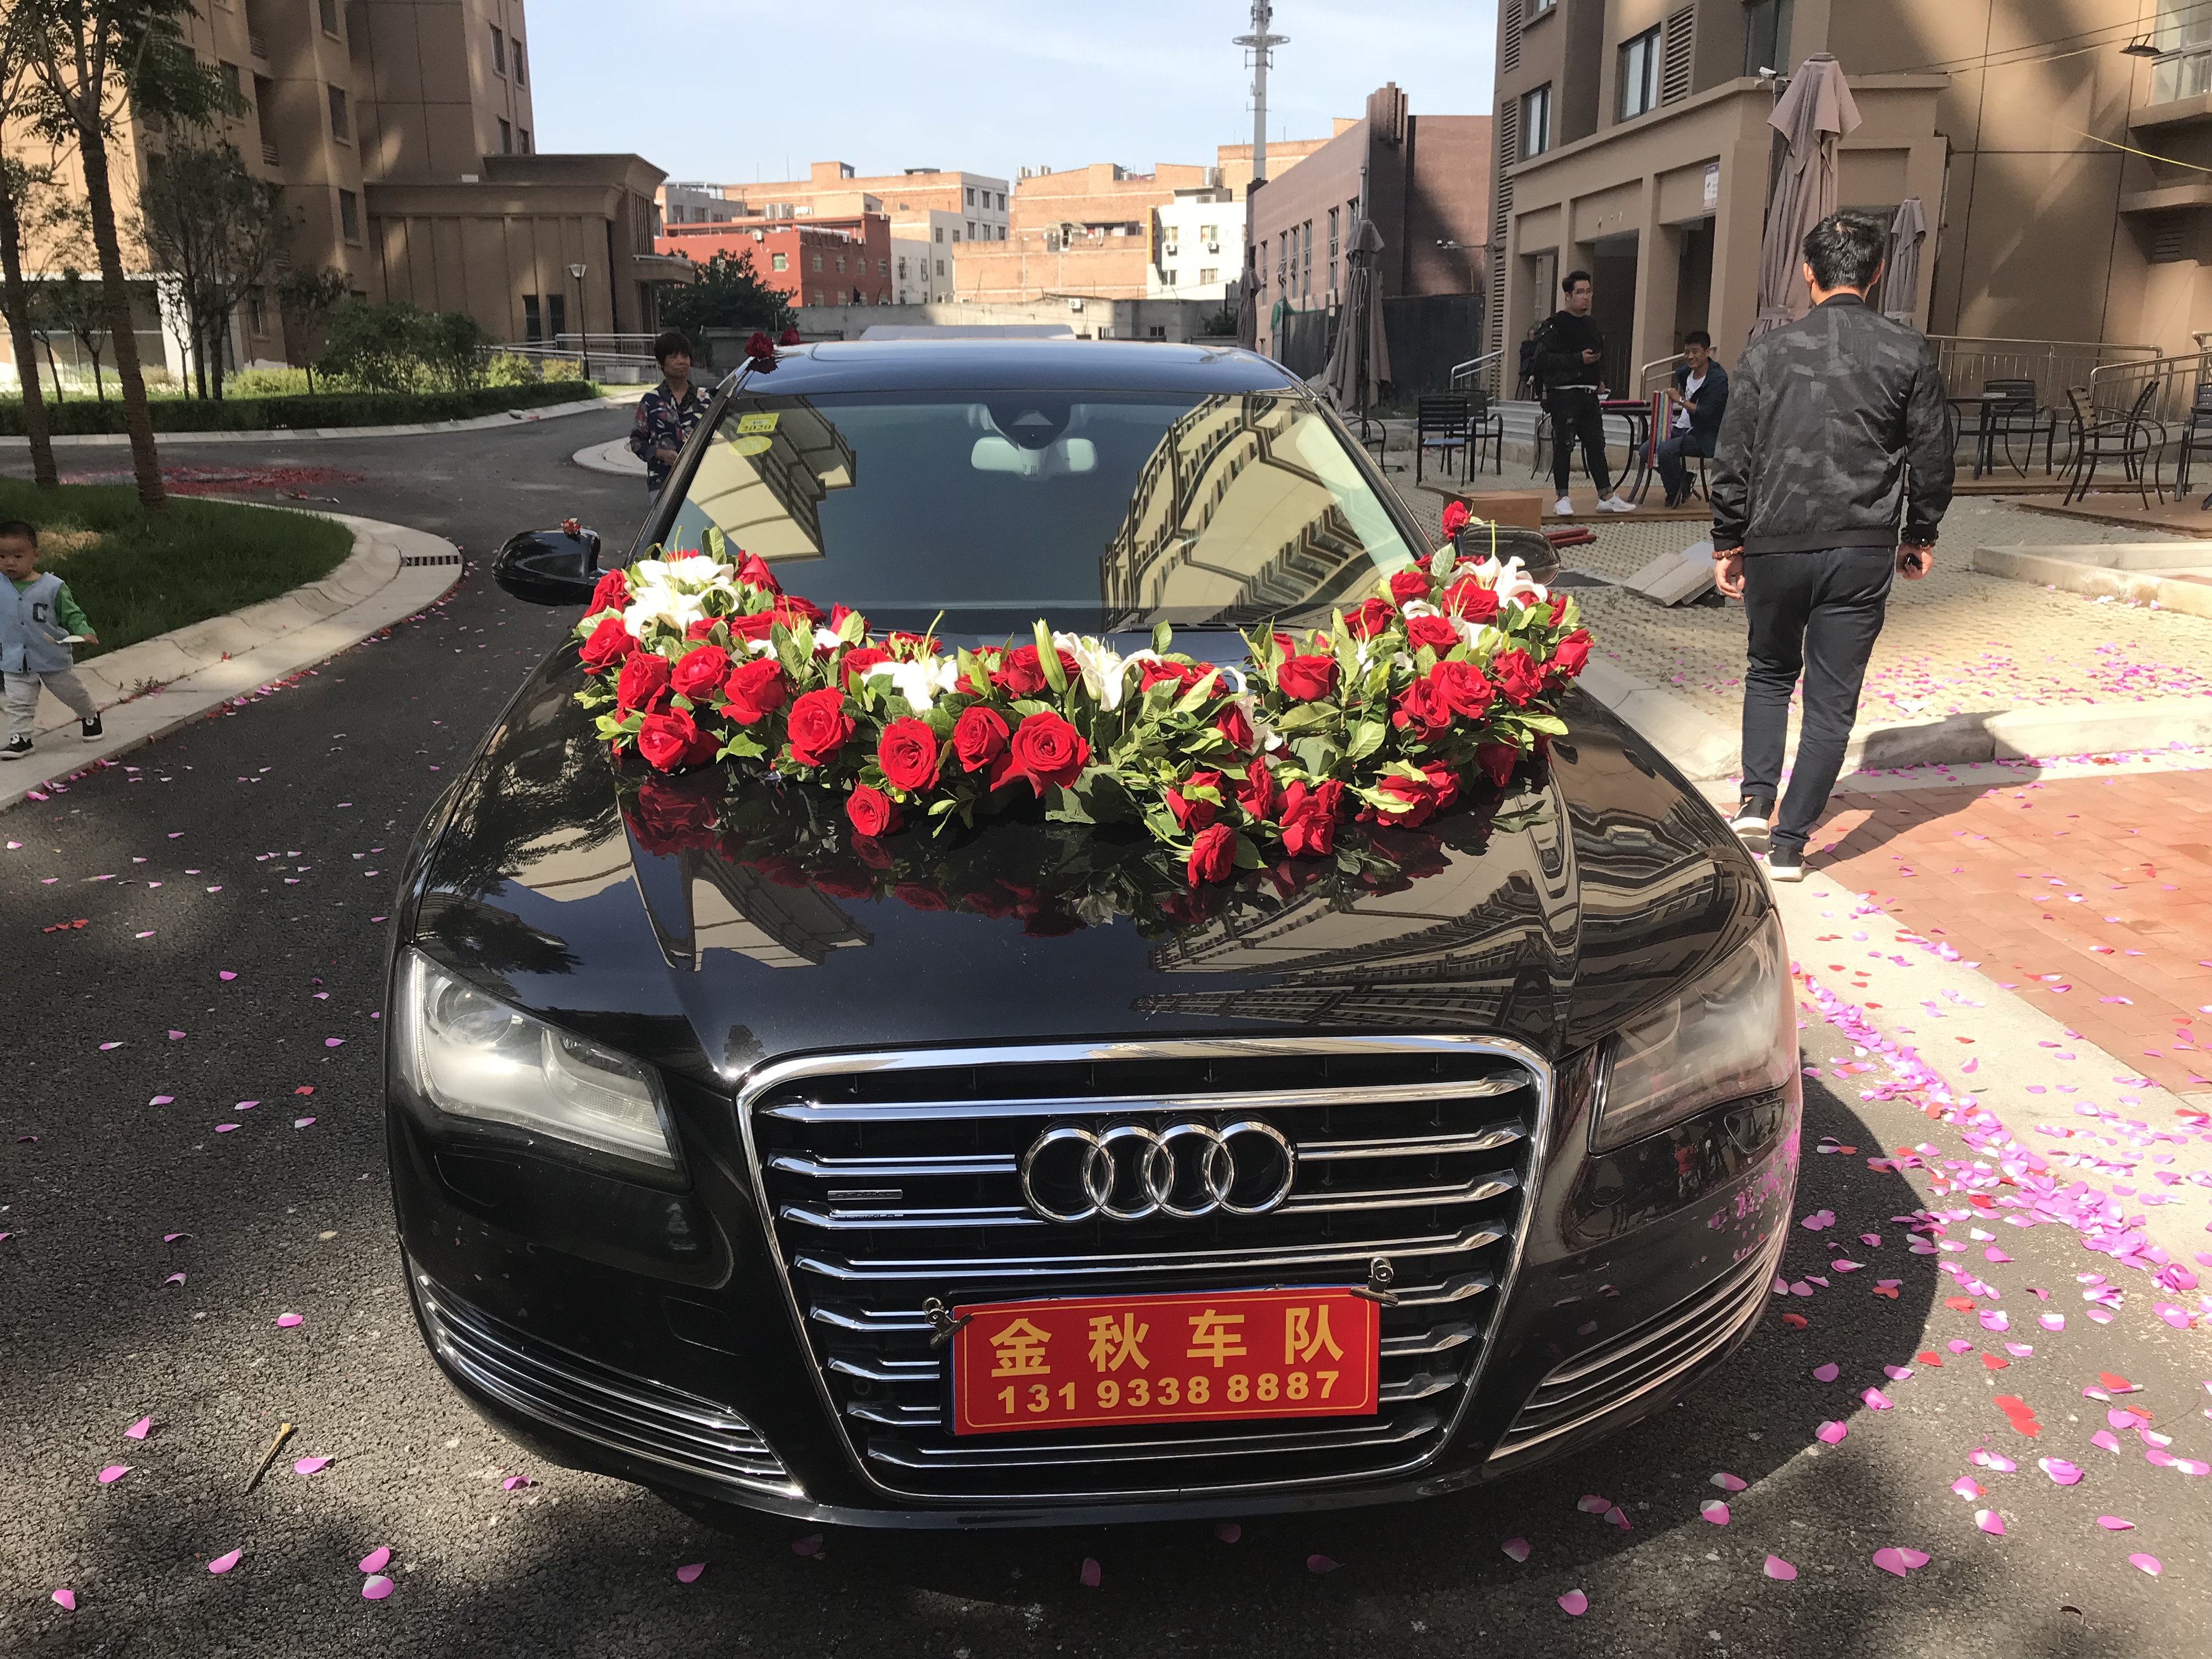 親，你家的車國慶節有沒有被借去當婚車呢？據說西安國慶節婚車很緊張 科技 第6張